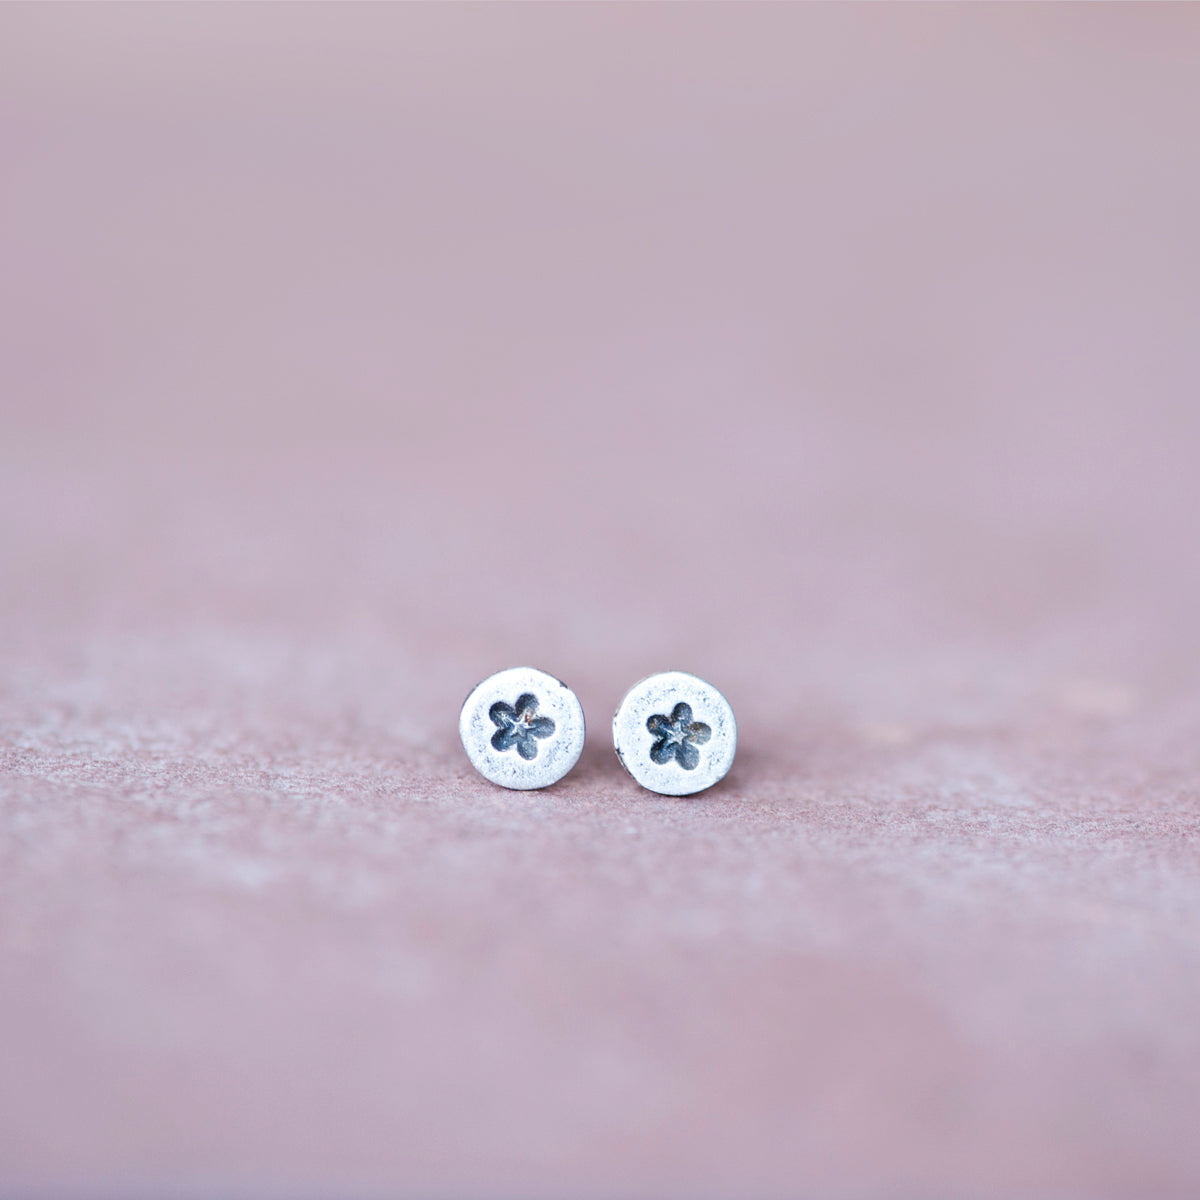 Circle Silver Star Stud Earrings from Jester Swink - Jester Swink